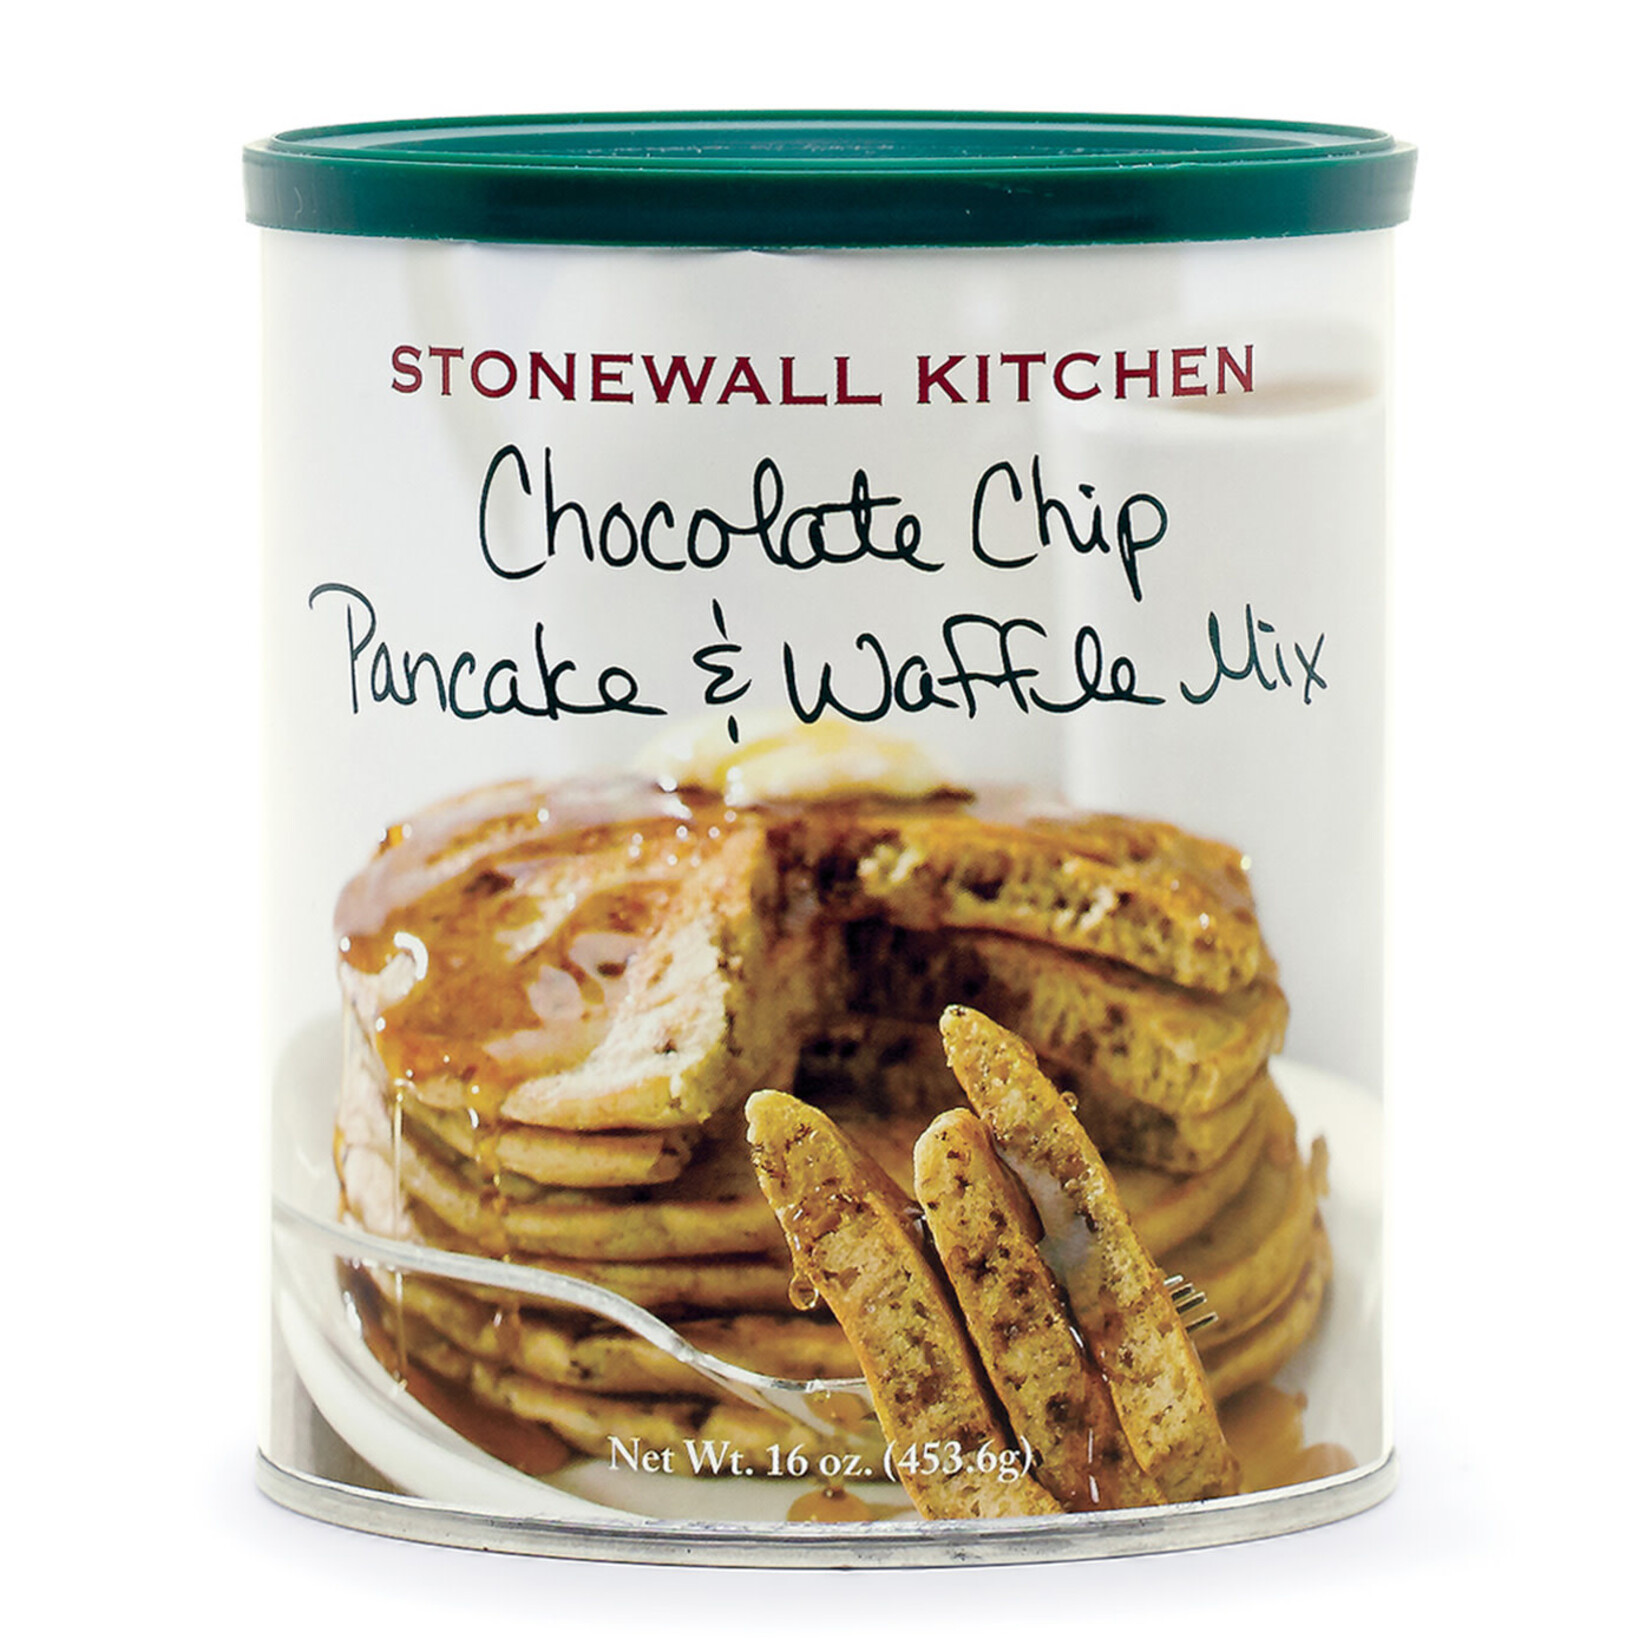 Stonewall Kitchen Chocolate Chip Pancake & Waffle Mix, 16 oz Can